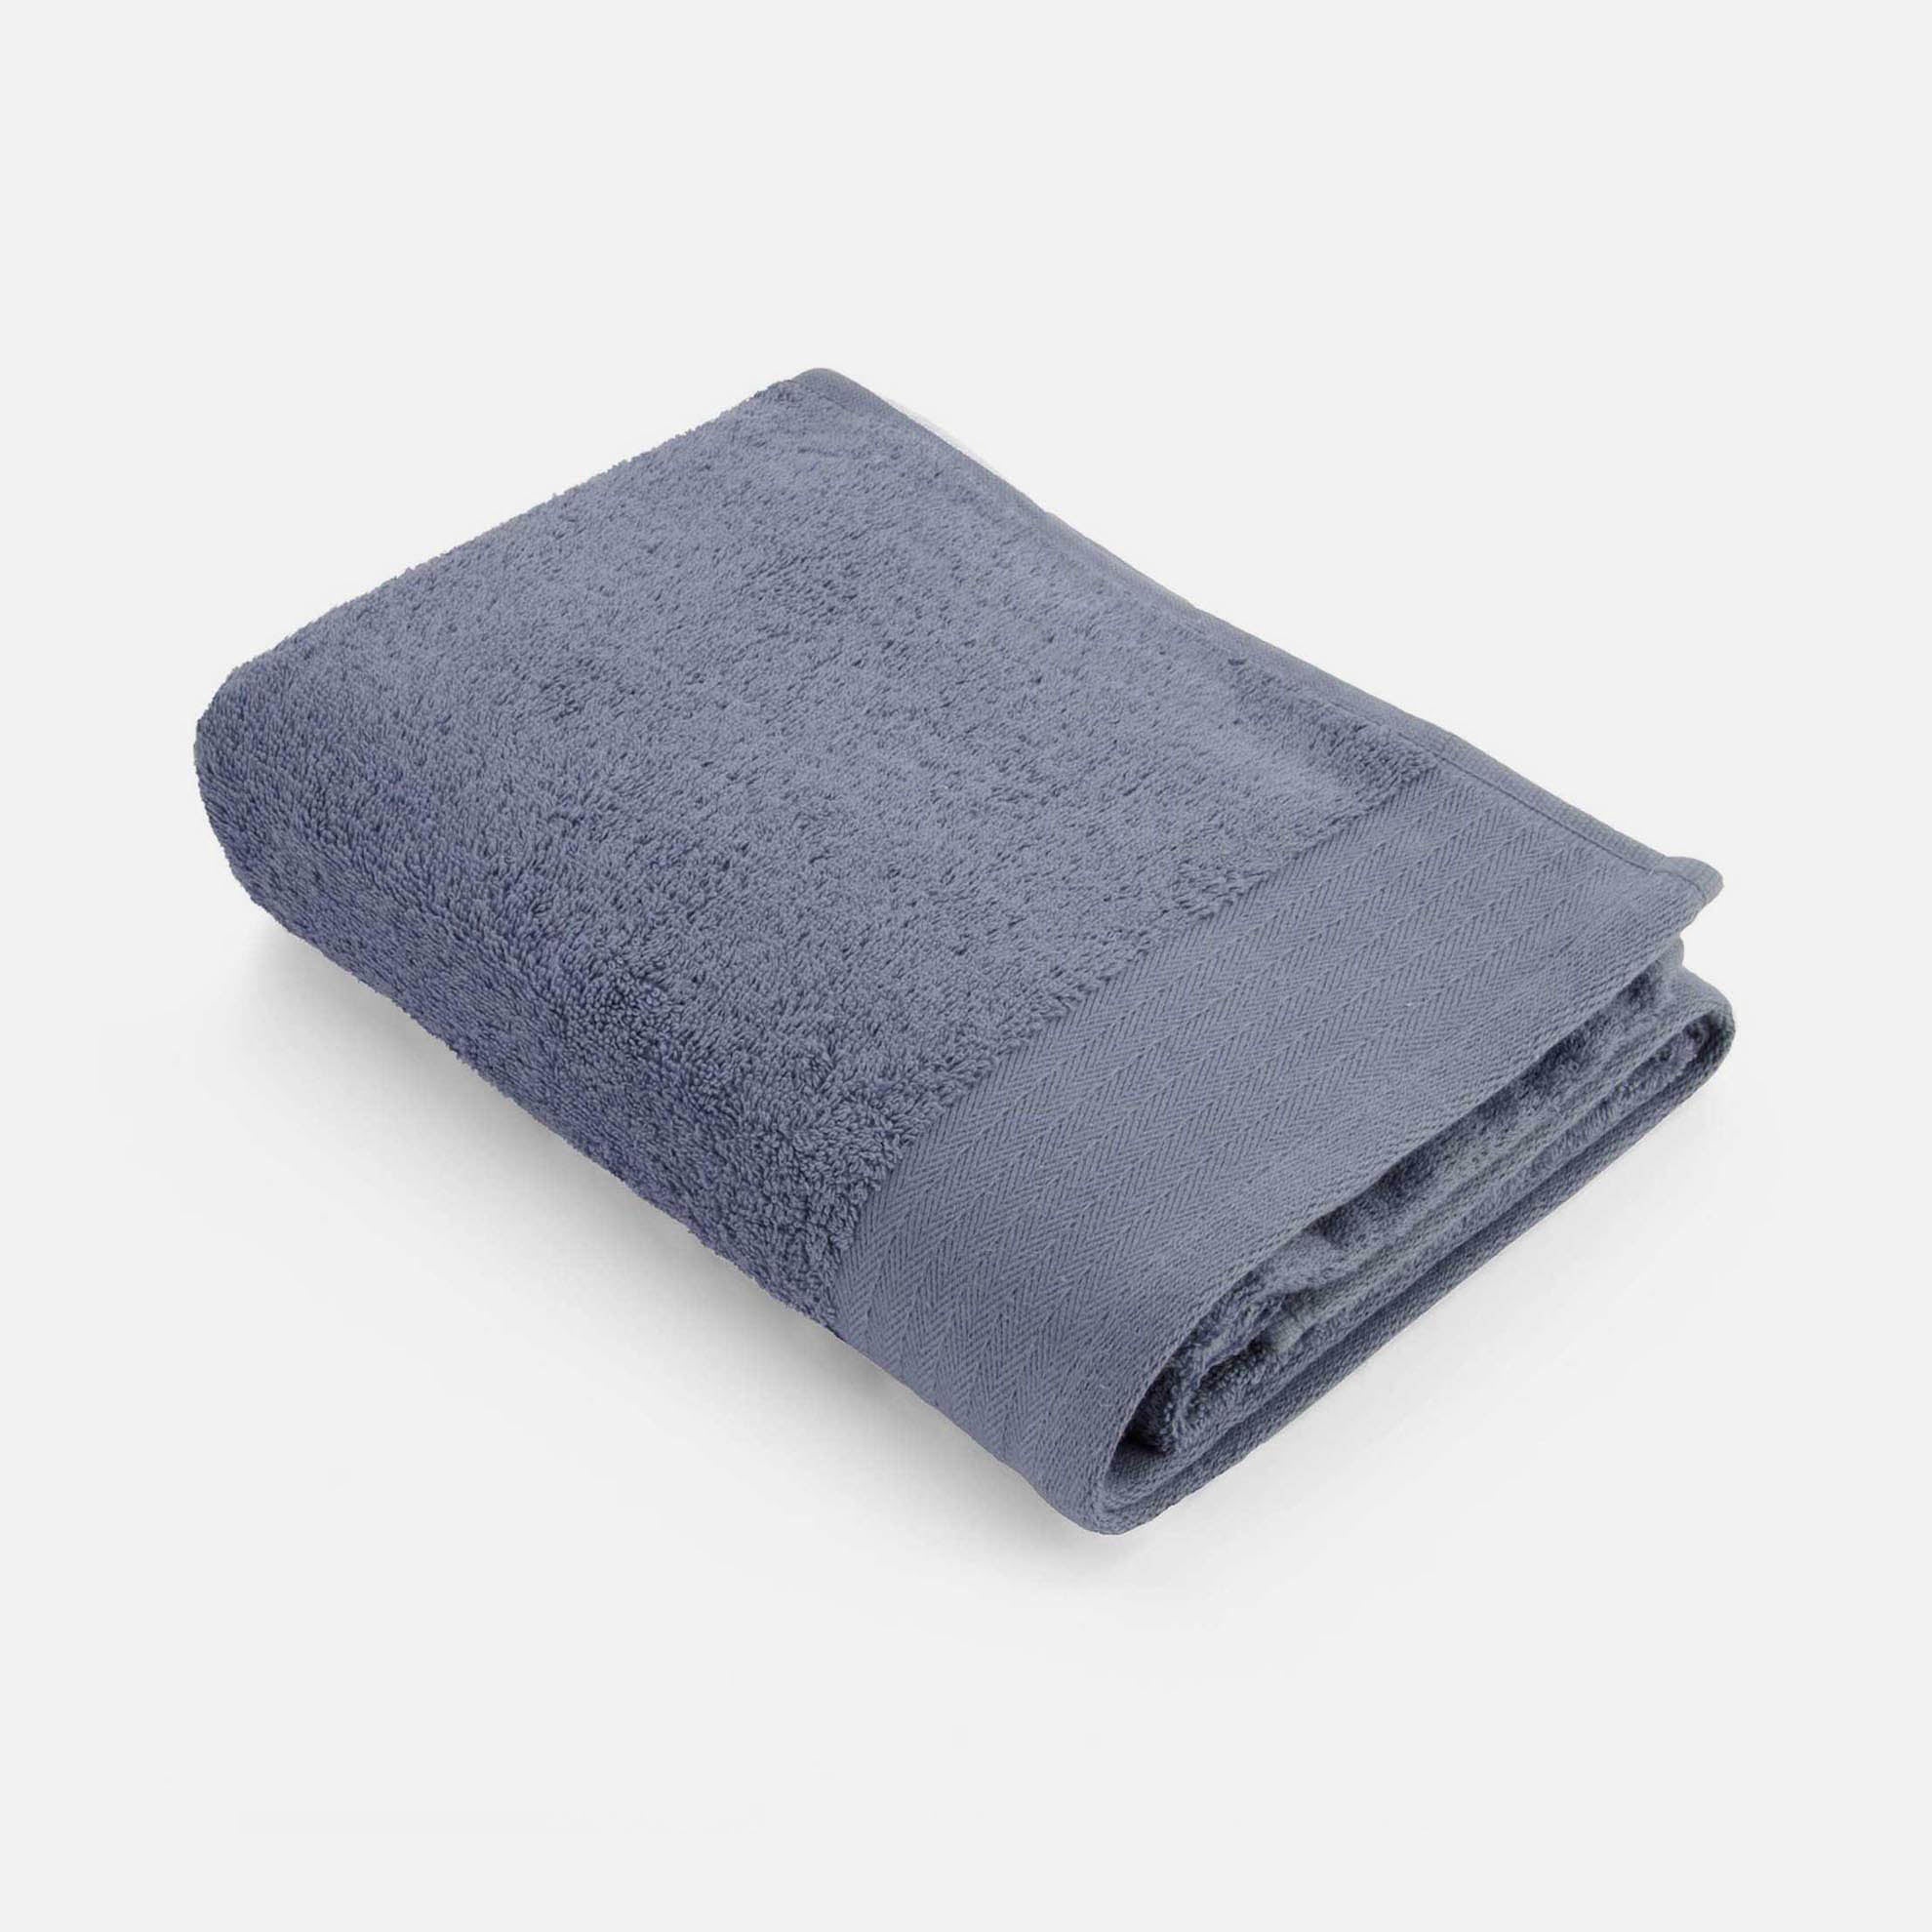 Walra Handdoek Soft Cotton 60x110 - Indigo -  550 gr/m² aanbieding